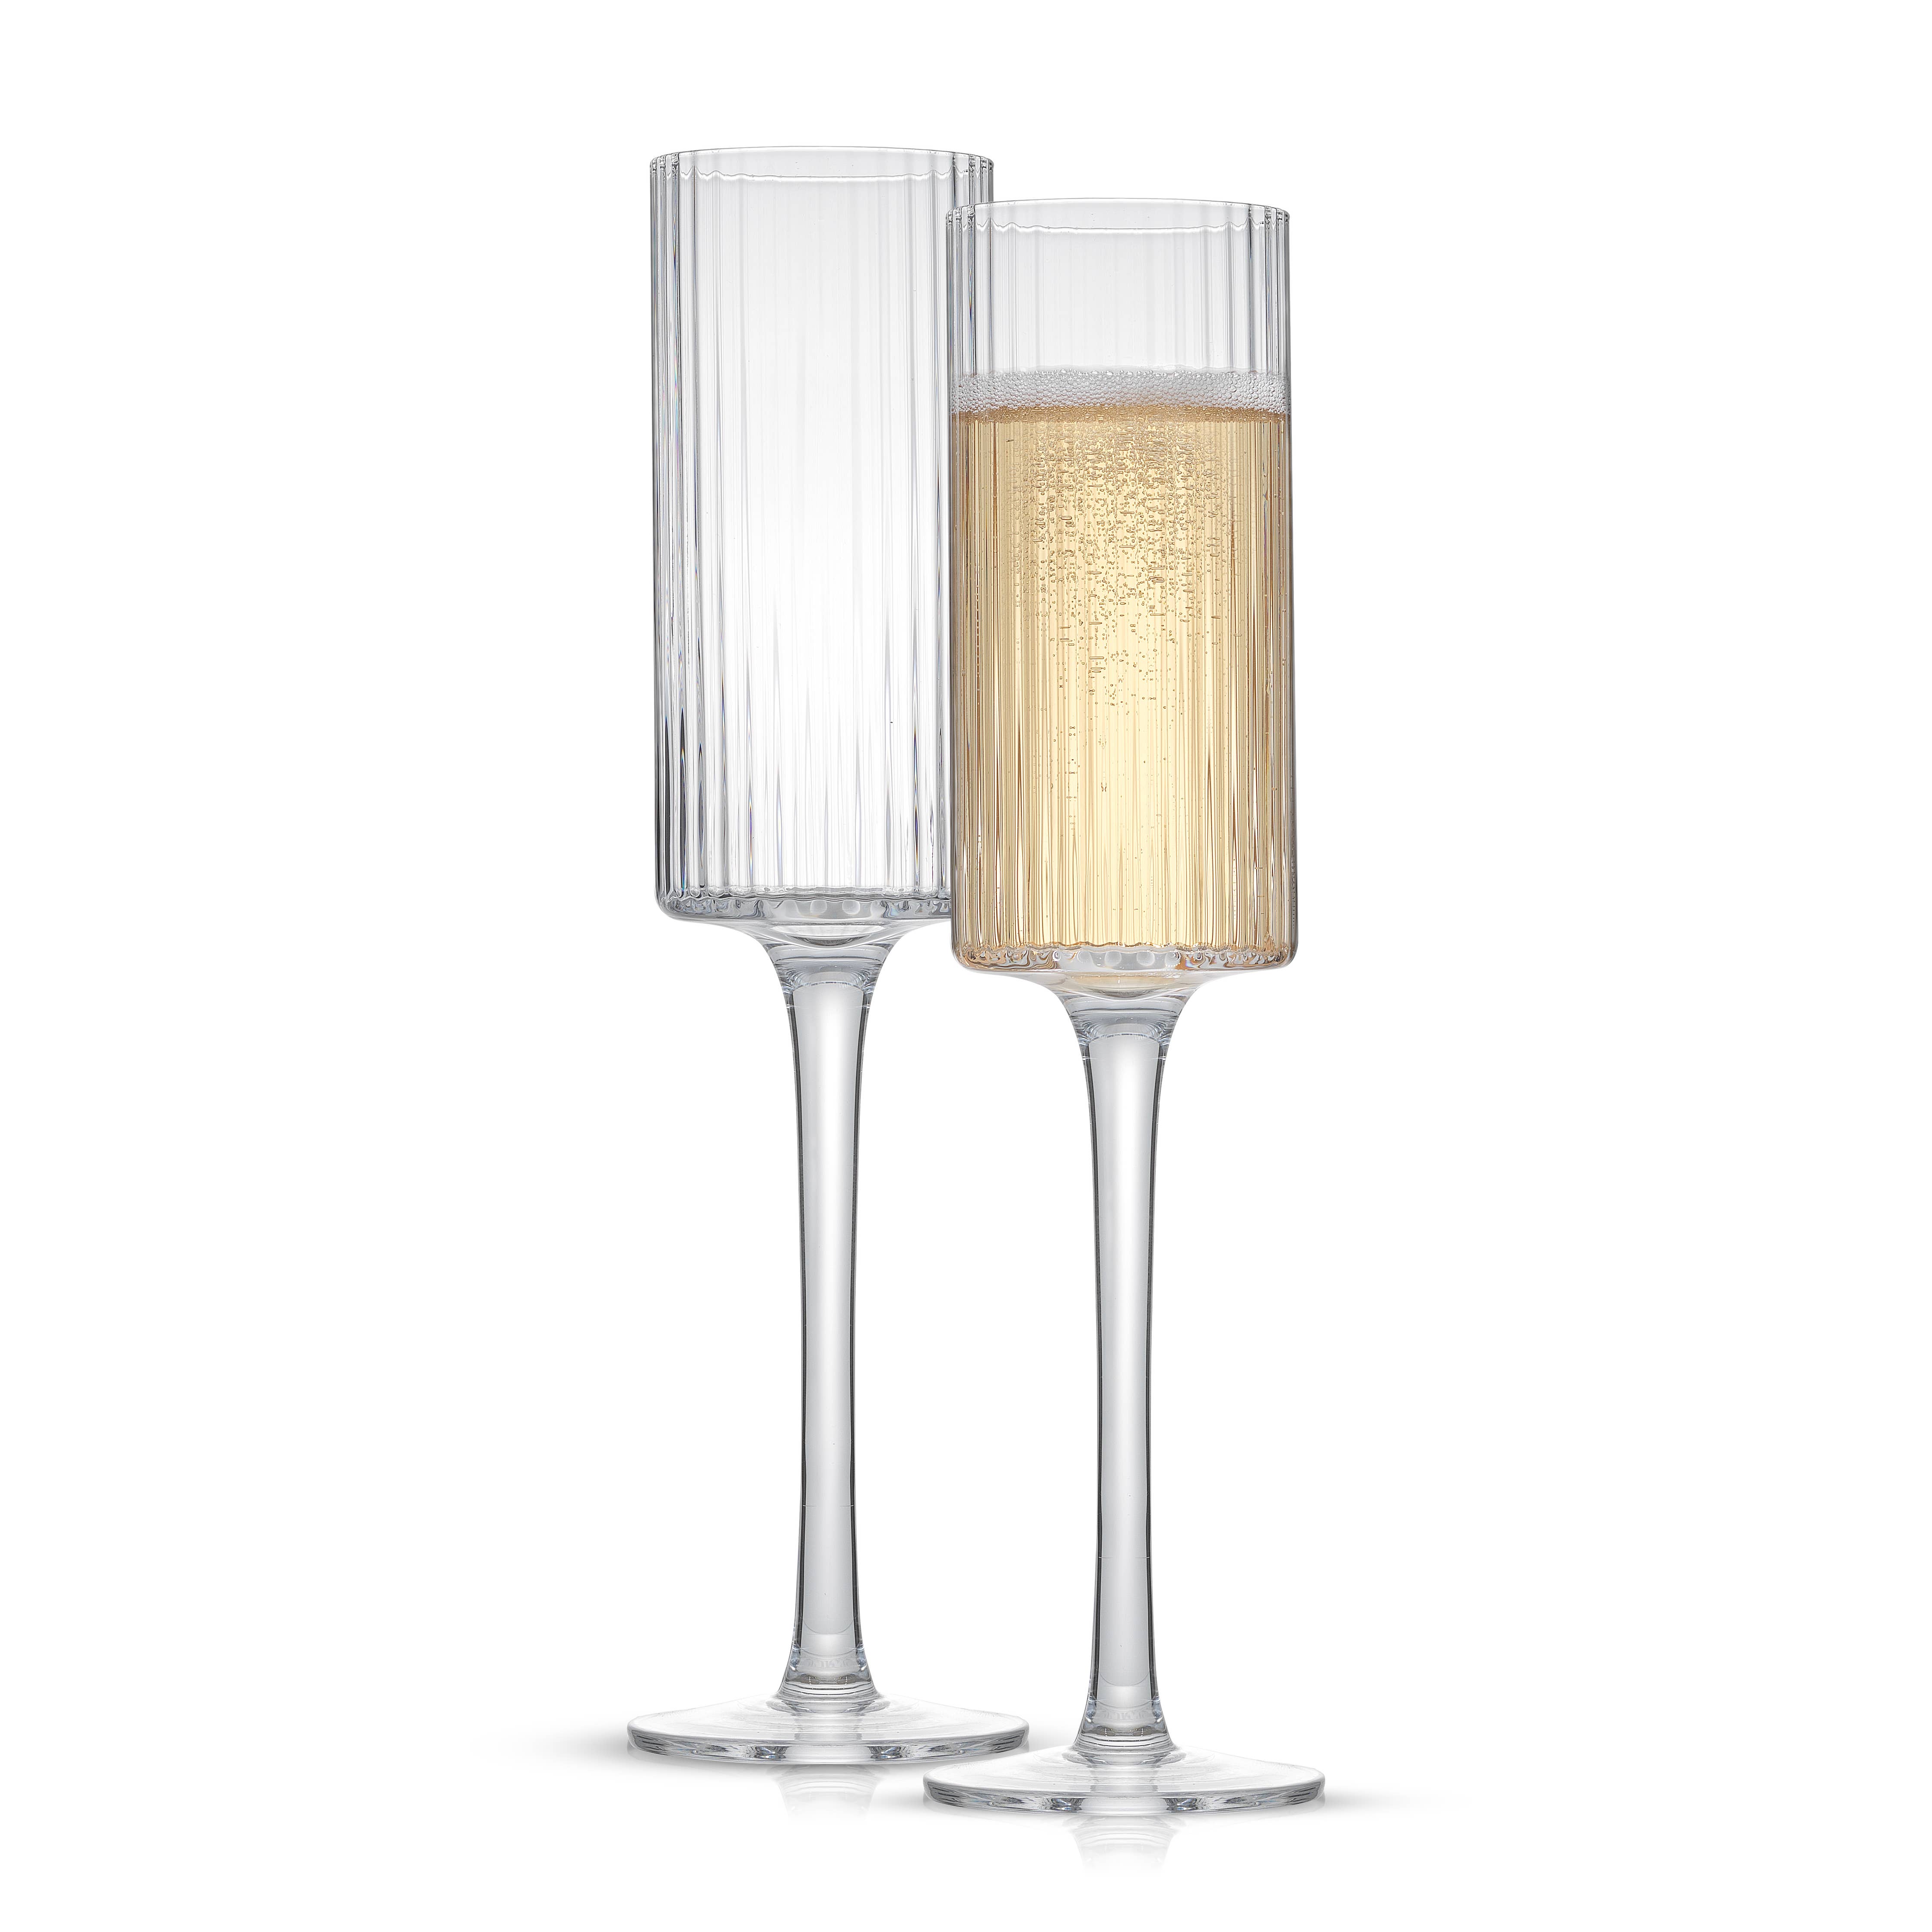 JoyJolt Elle Fluted Cylinder White Wine Glass - 11.5 oz - Set of 2, 11.5 oz  - Fred Meyer